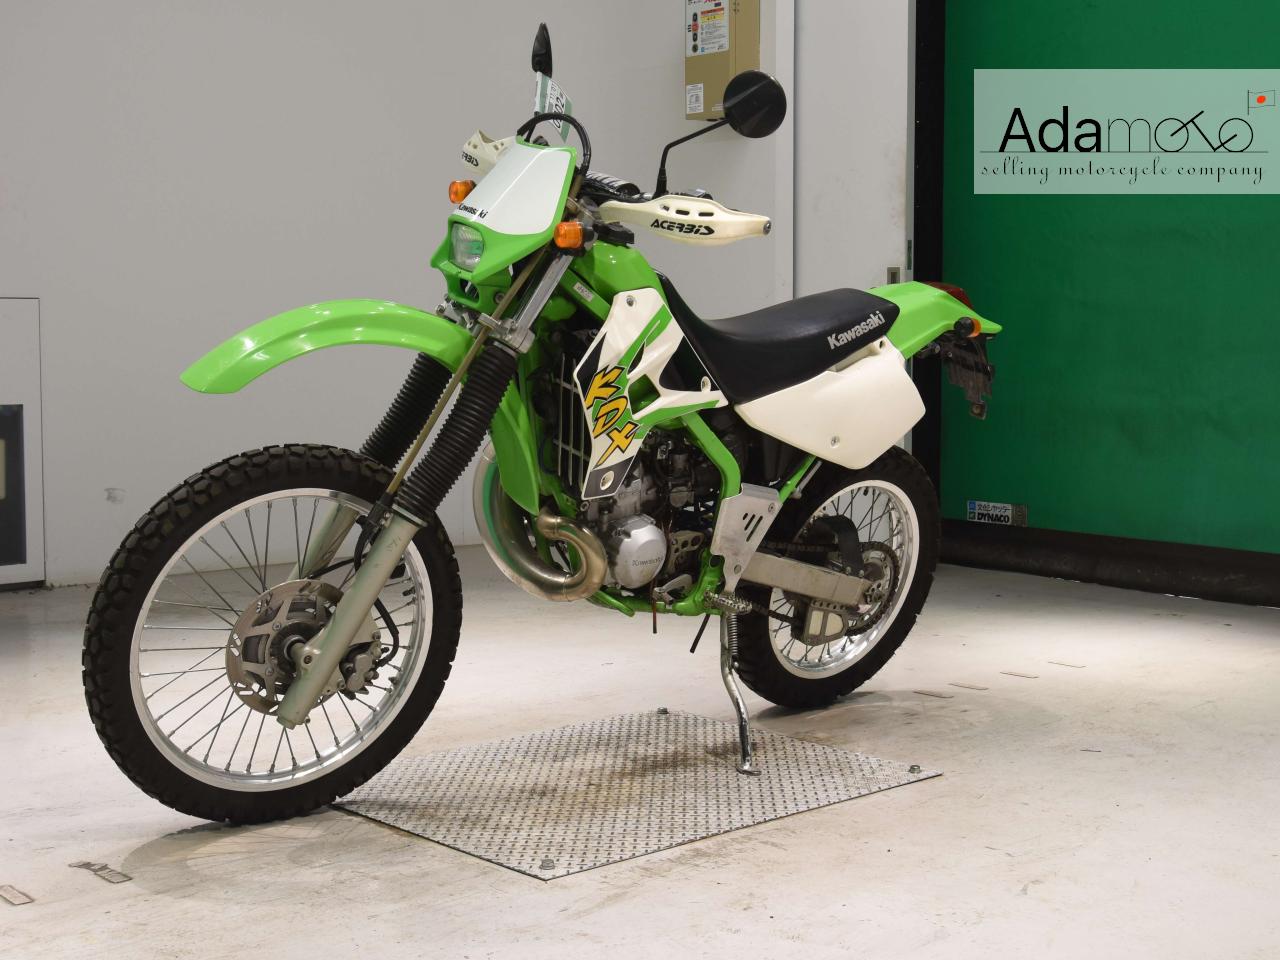 Kawasaki KDX220SR - Adamoto - Motorcycles from Japan